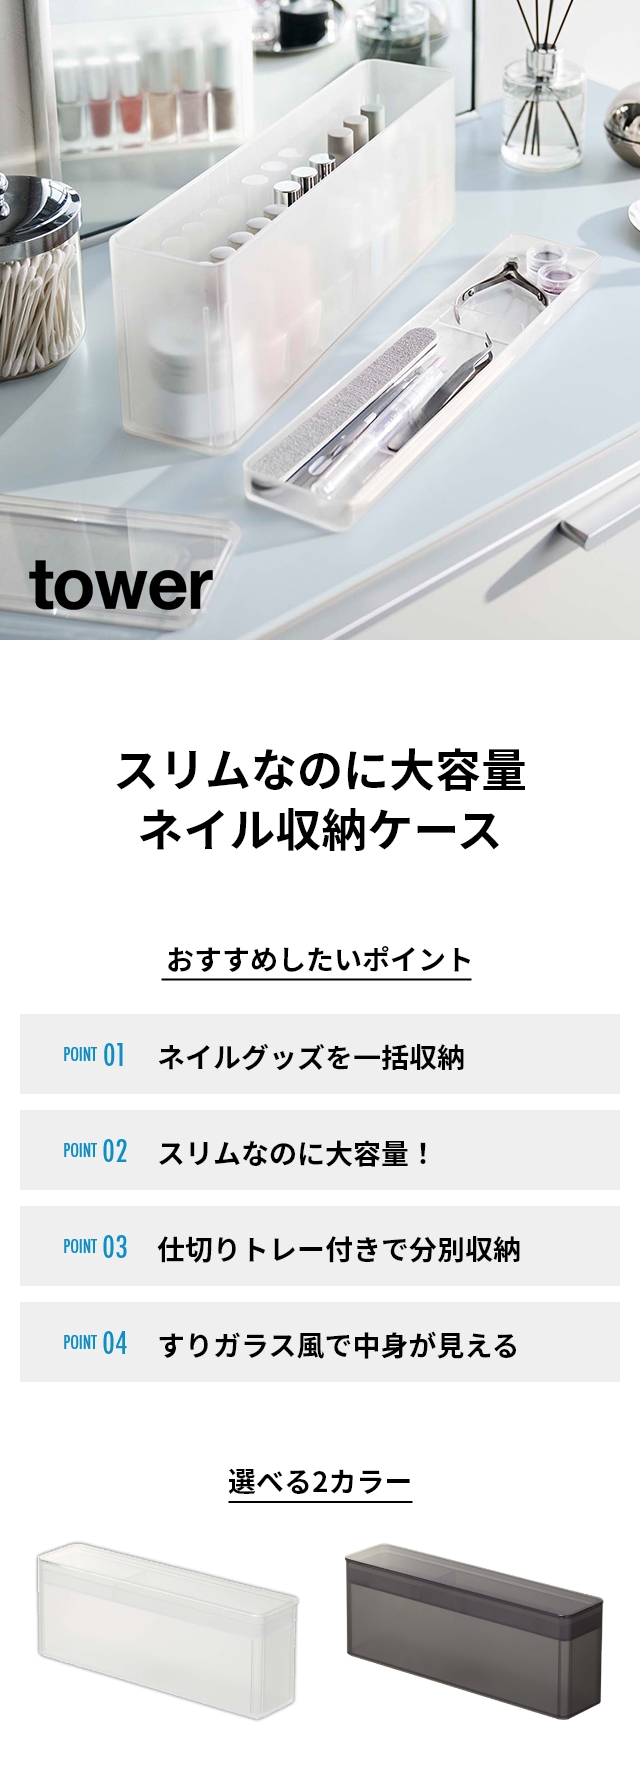 tower(タワー) ネイル収納ケース